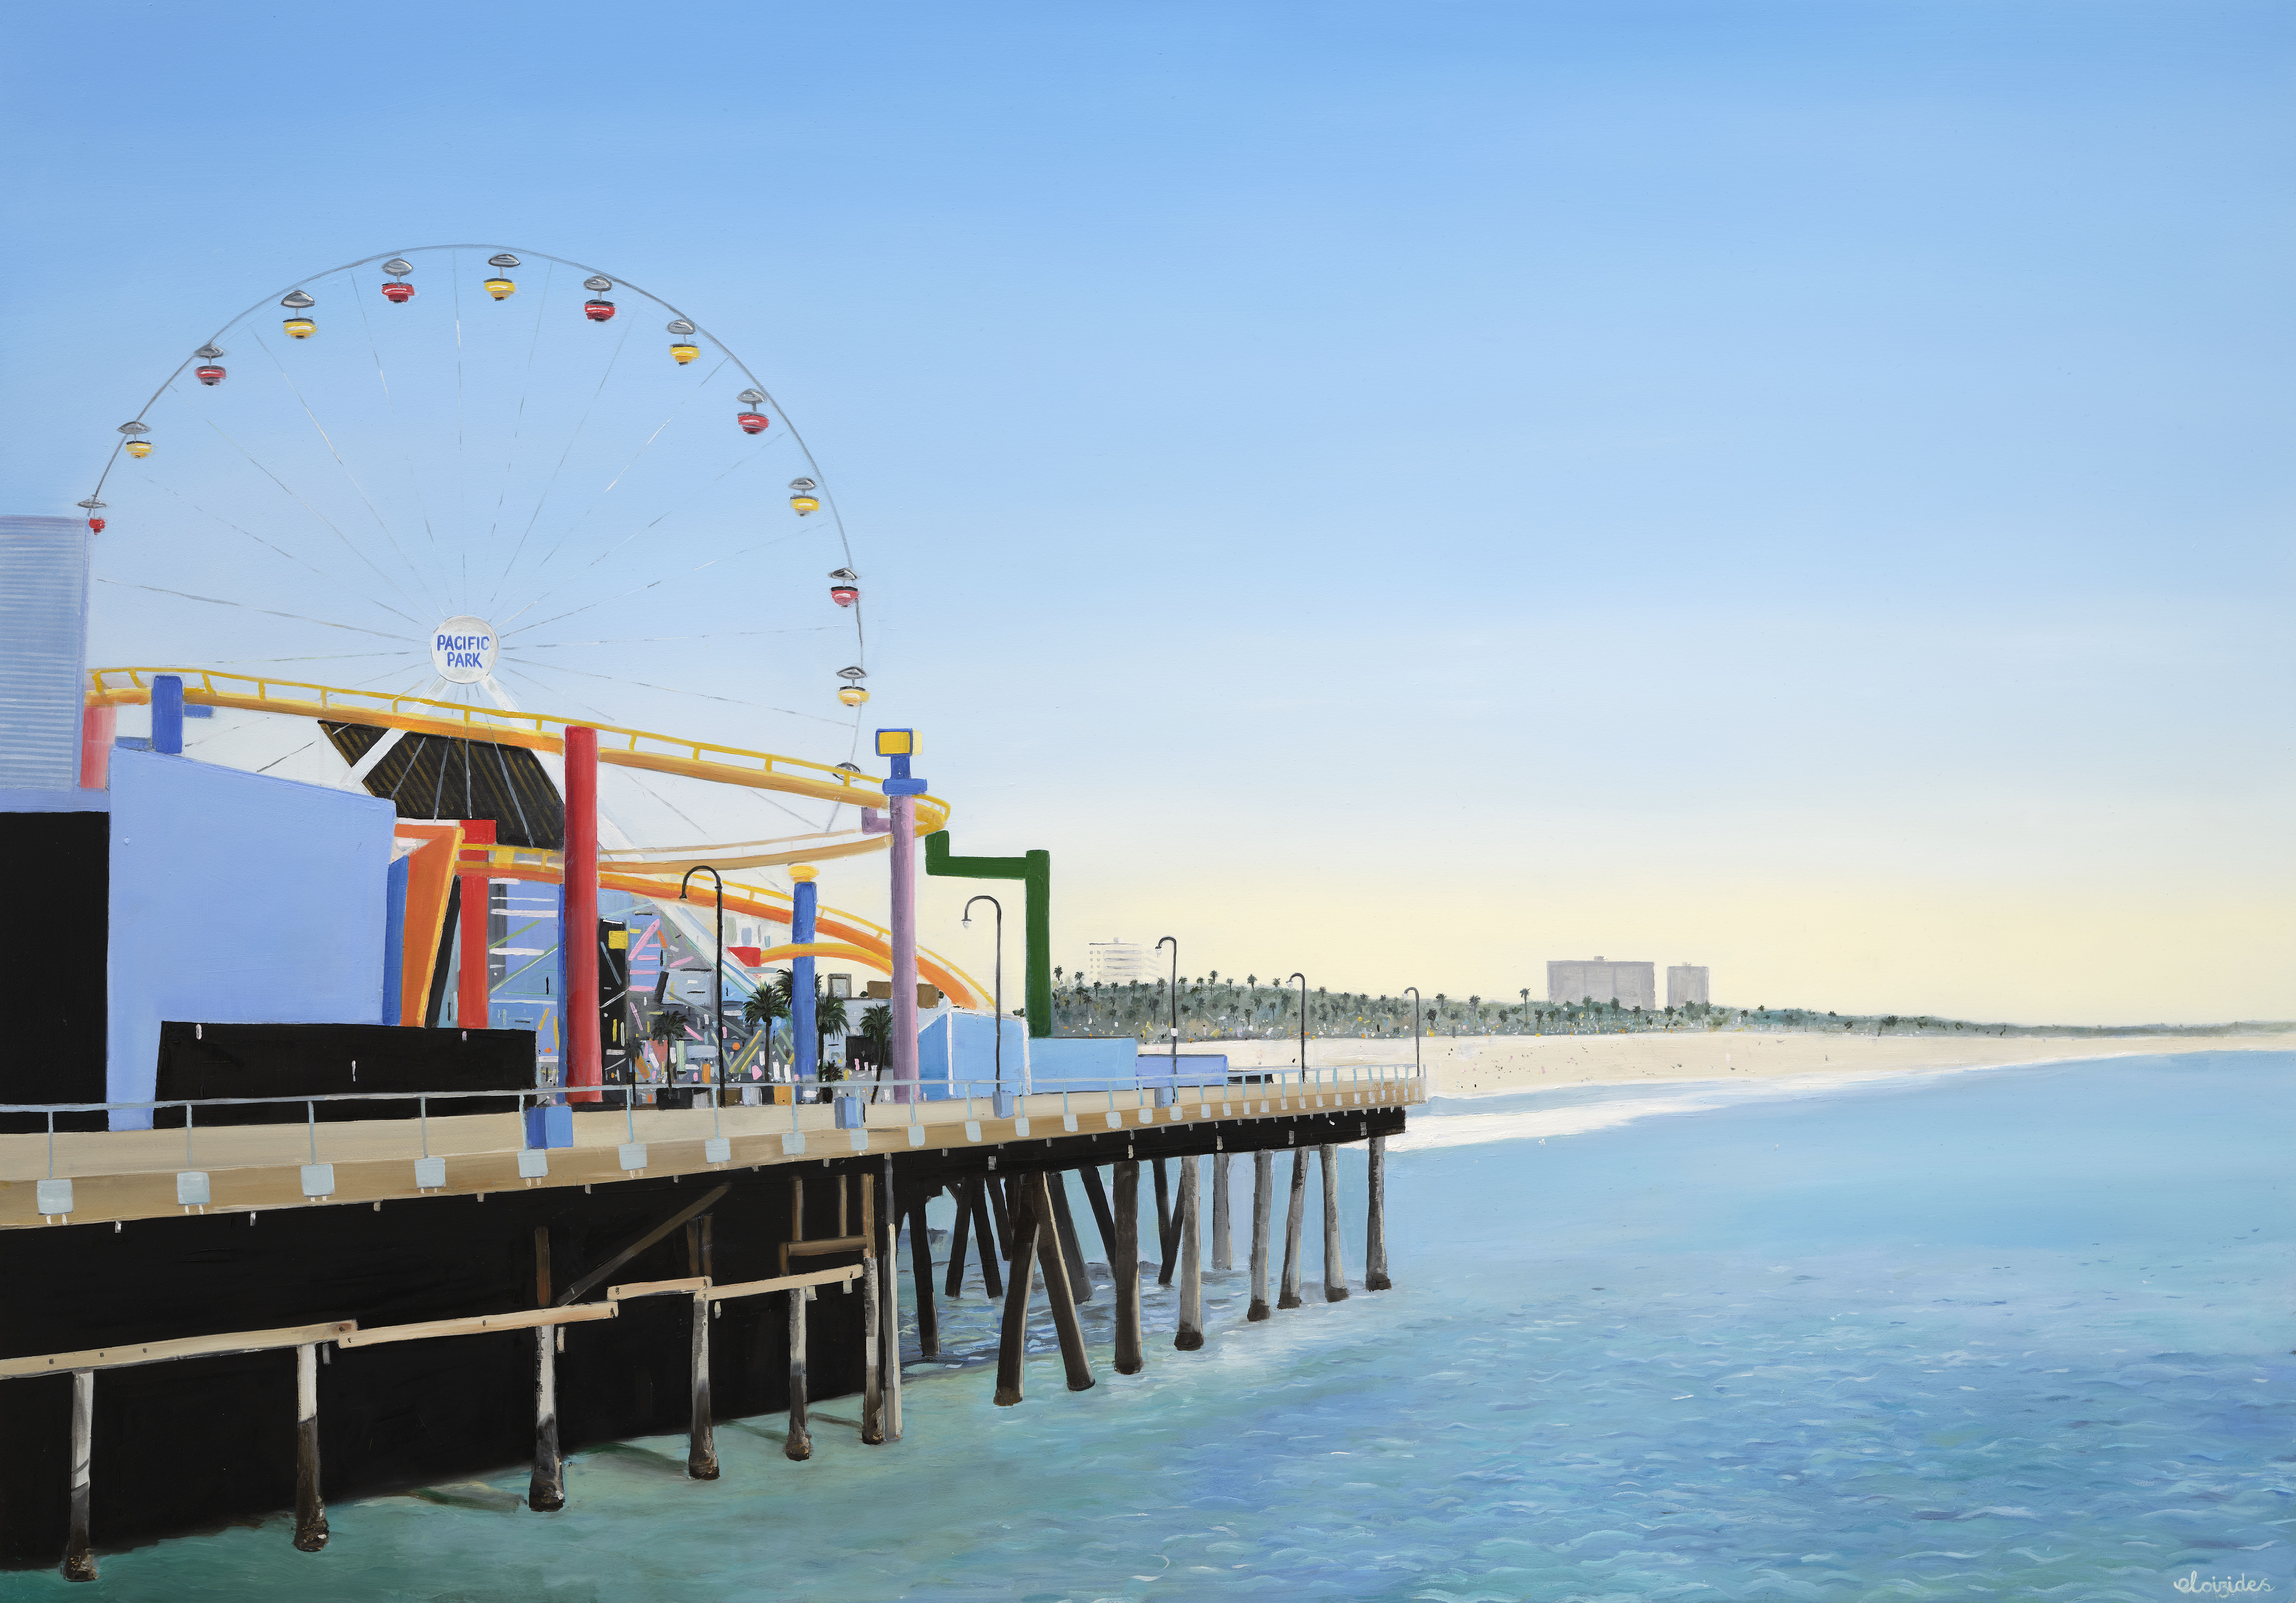 Brighton pier painting